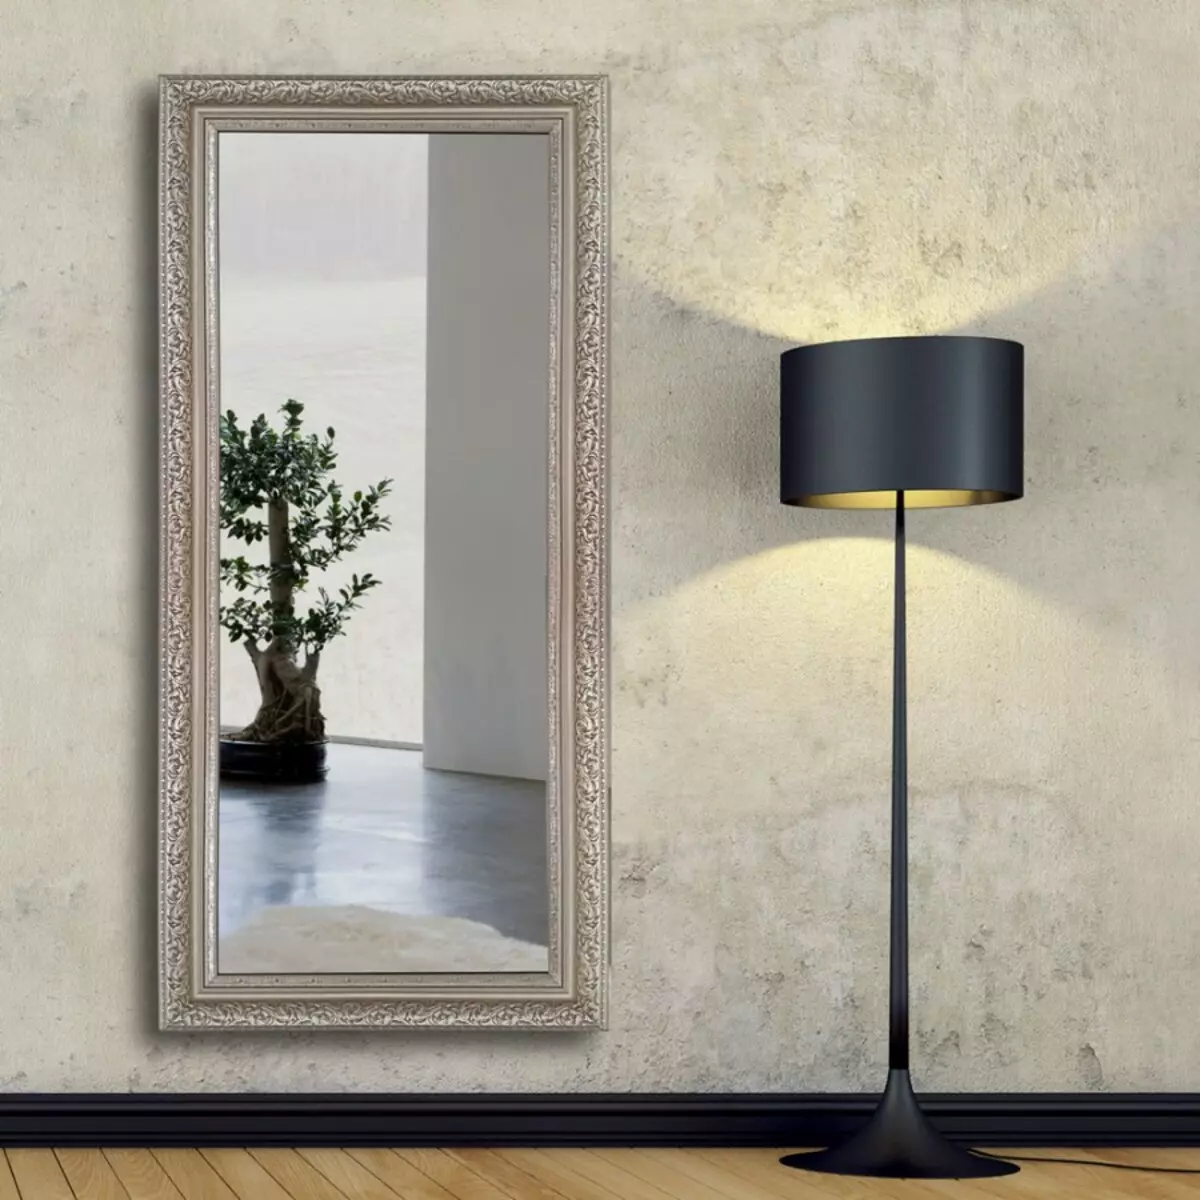 Sienas spoguļi priekšnams (60 fotogrāfijas): izvēlēties priekšnams lielos spoguļos ar apgaismojumu uz sienas, uzstādīti konstrukcijas pilnā izaugsmē un modeļos ar pulksteni 9199_41